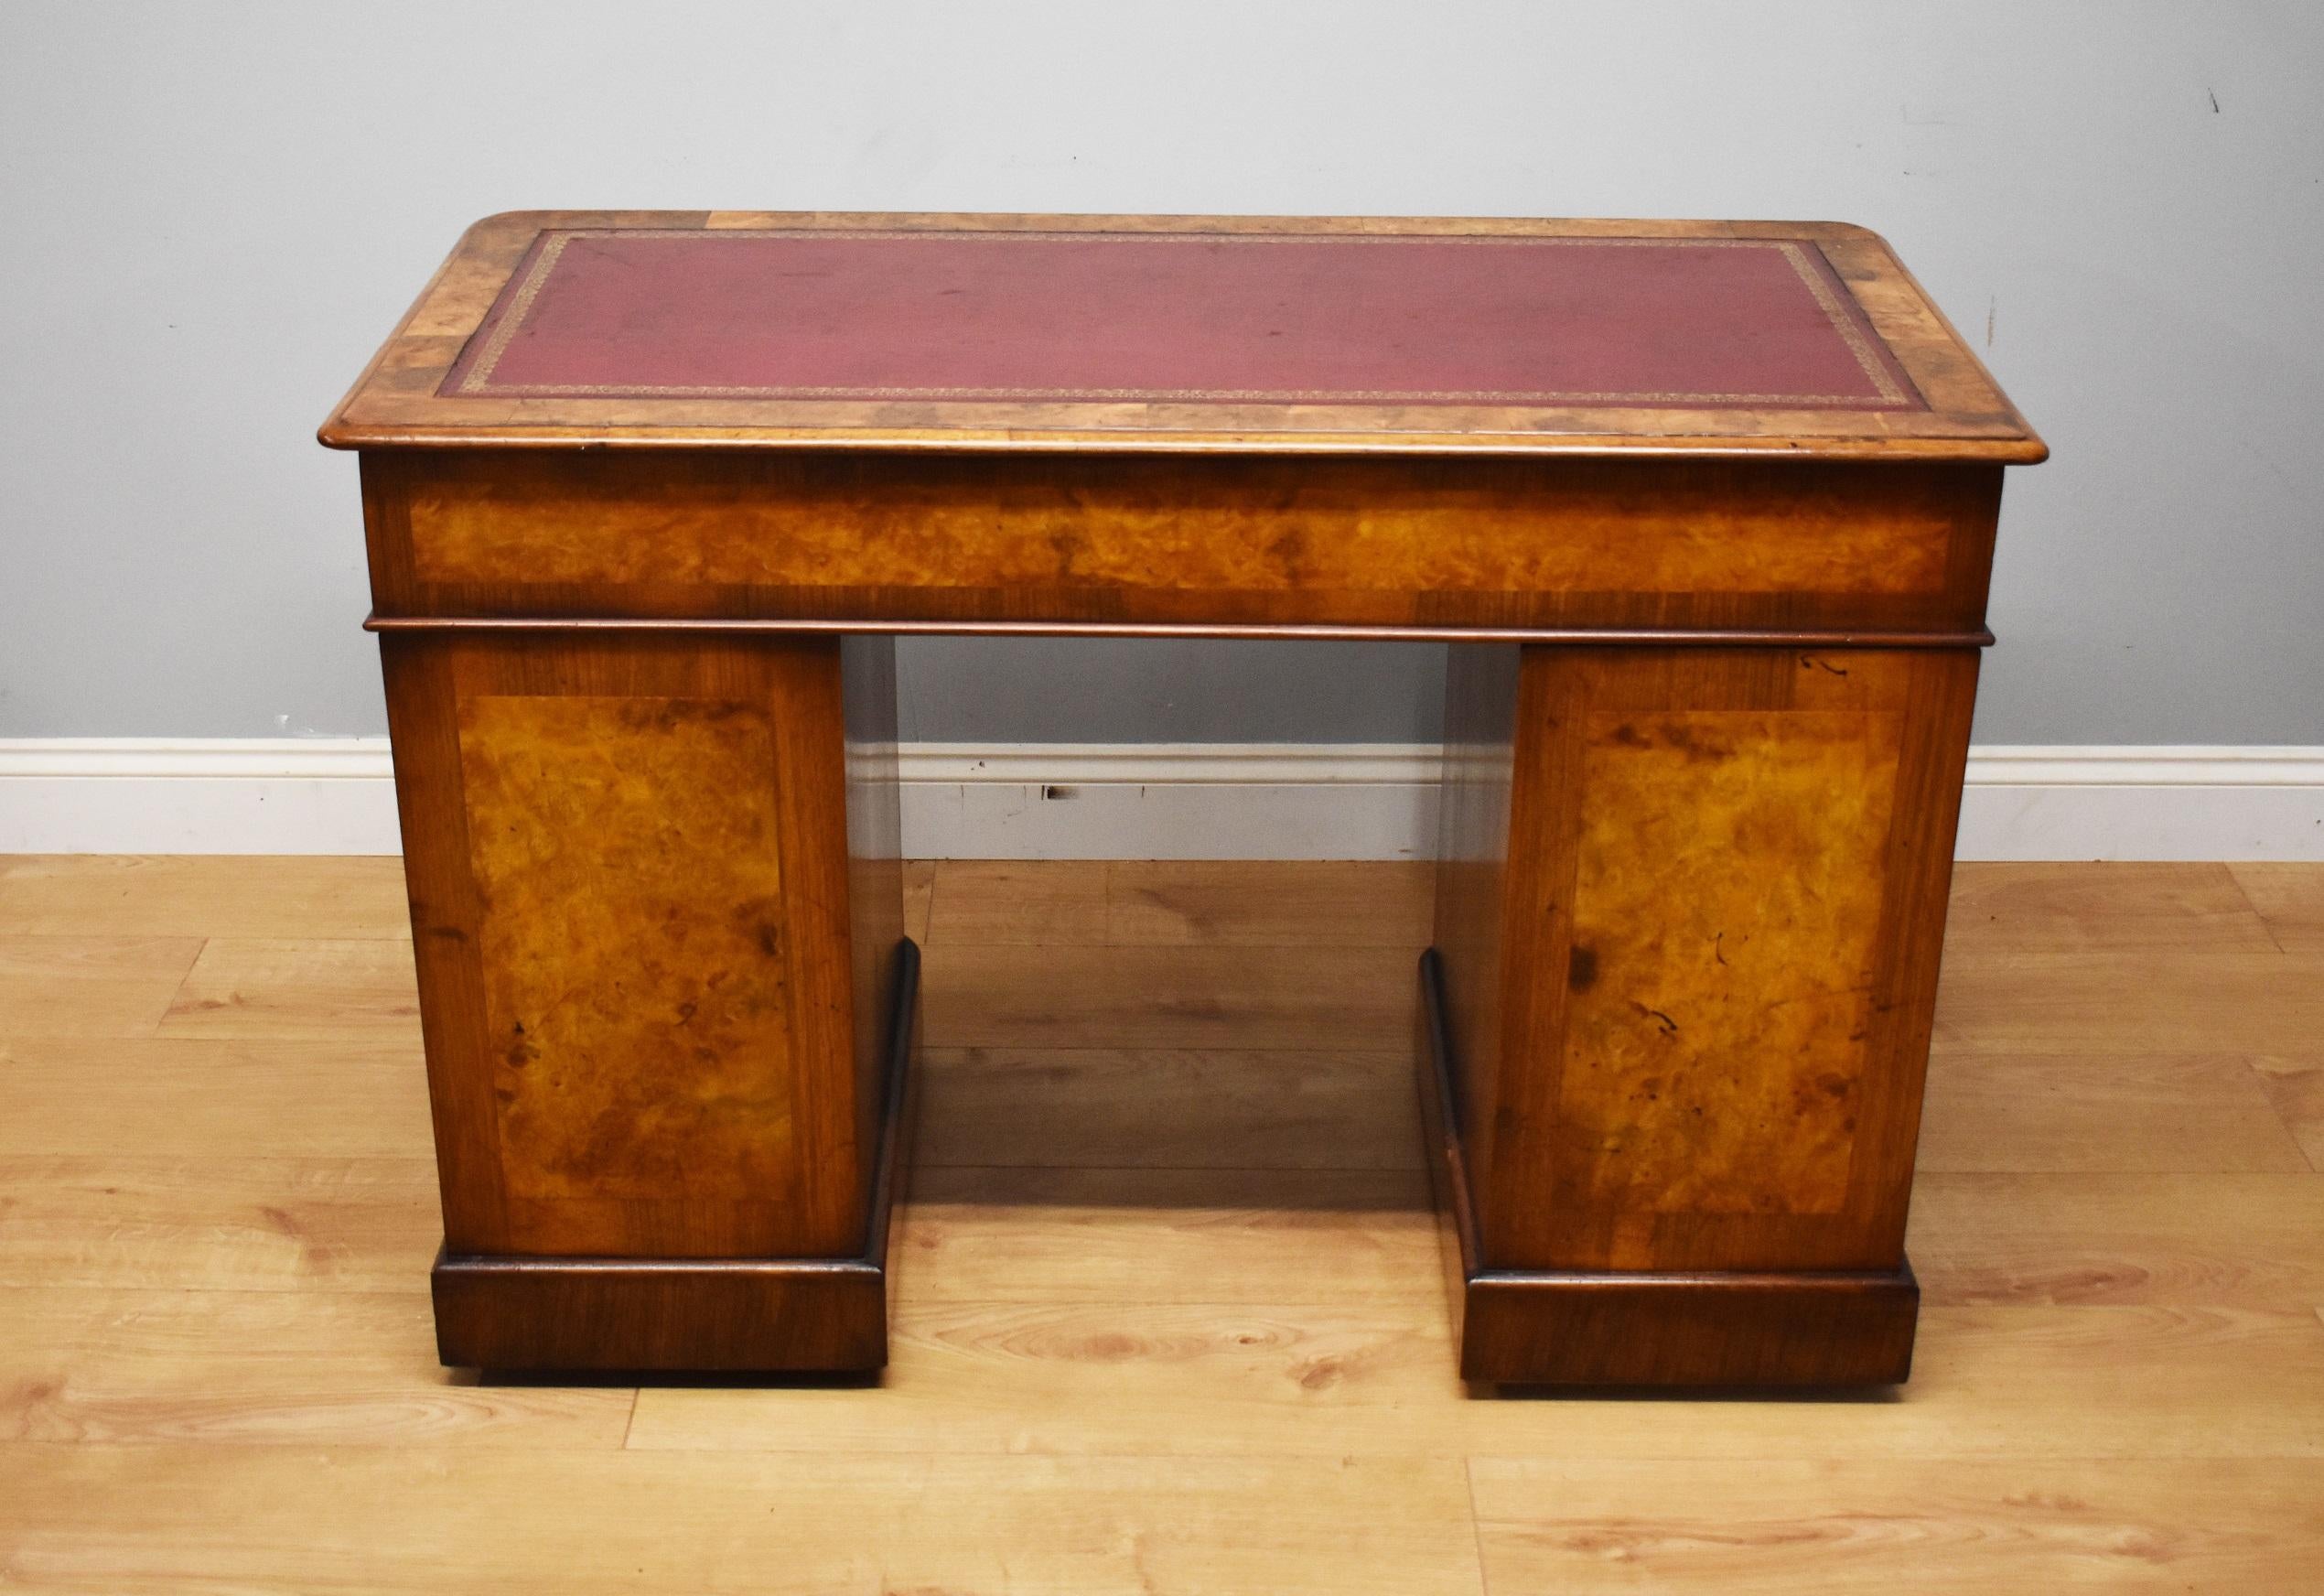 19th Century Victorian Burr Walnut Pedestal Desk (19. Jahrhundert)